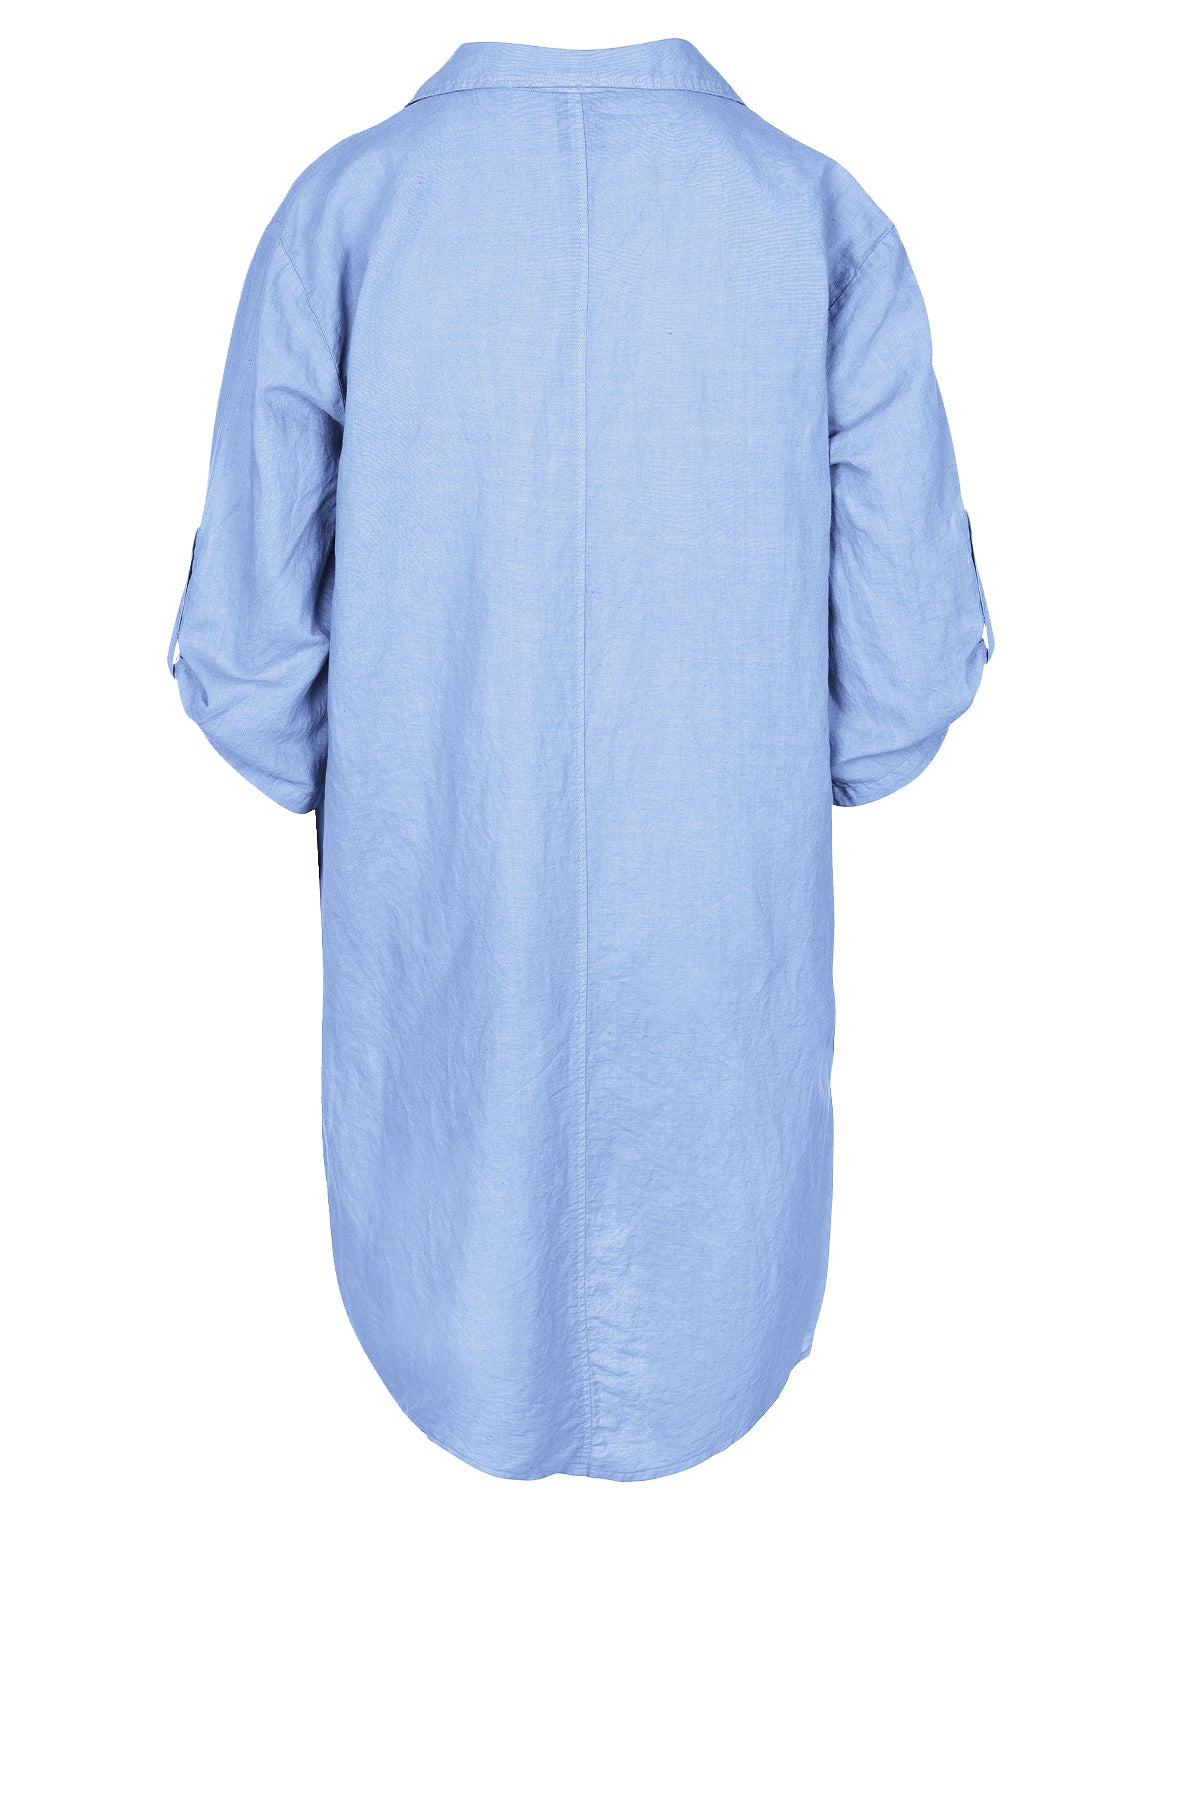 LUXZUZ // ONE TWO Siwinia Dress Dress 510 Chambray Blue